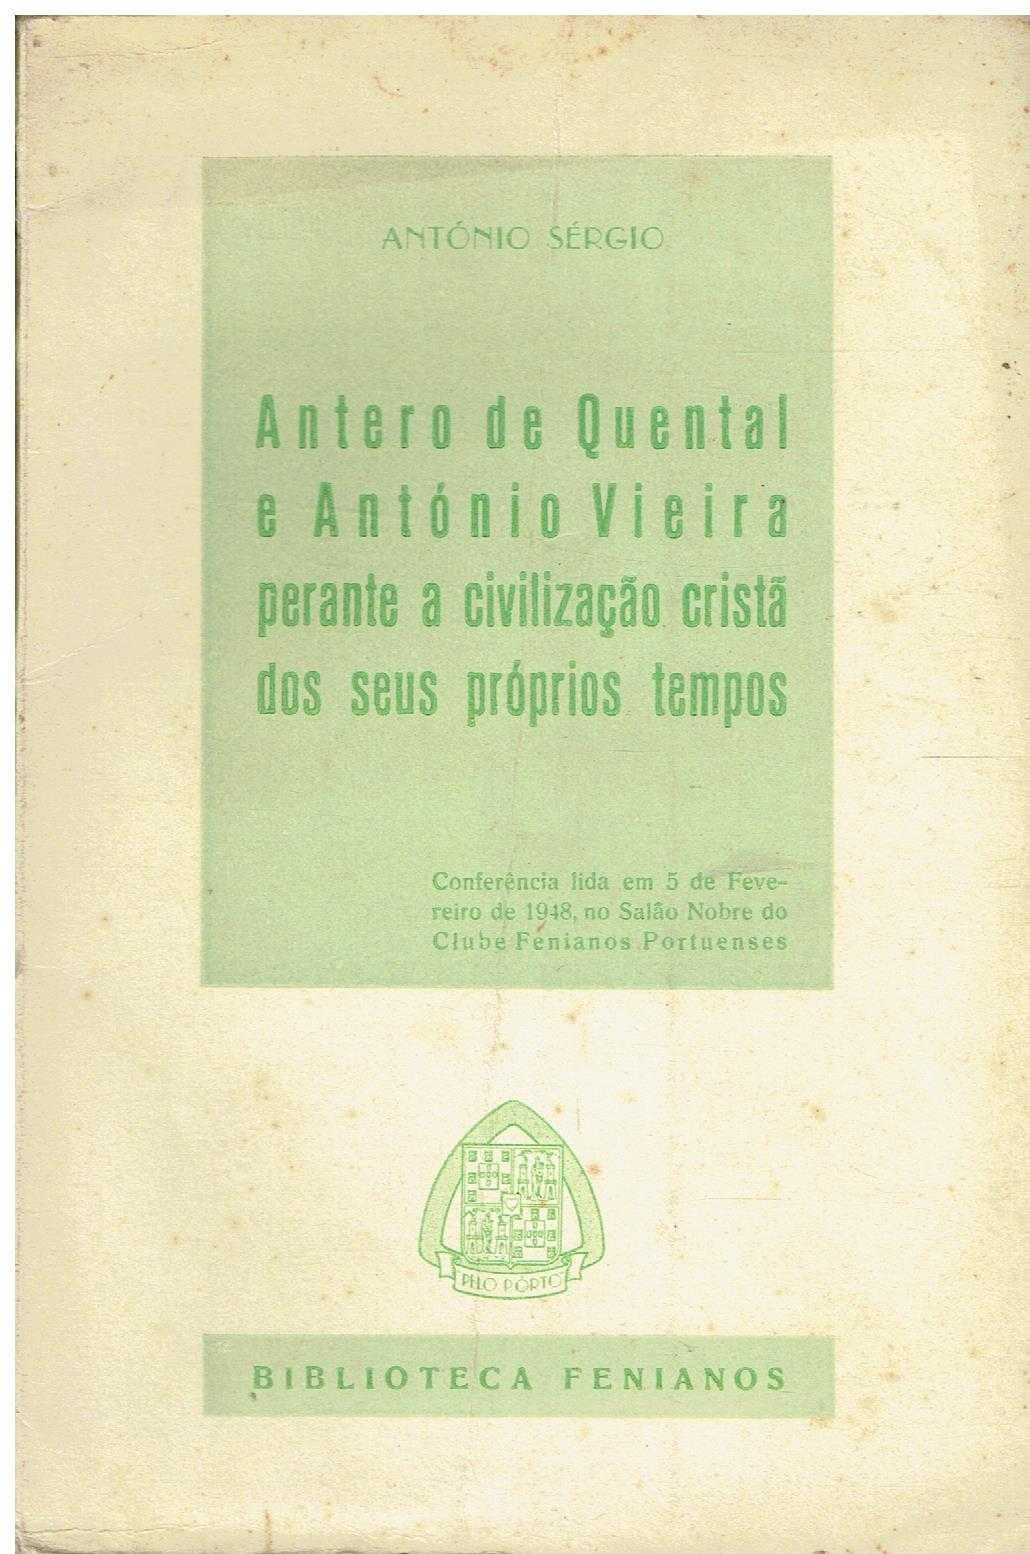 1487 -Livros de Antonio Sergio 2